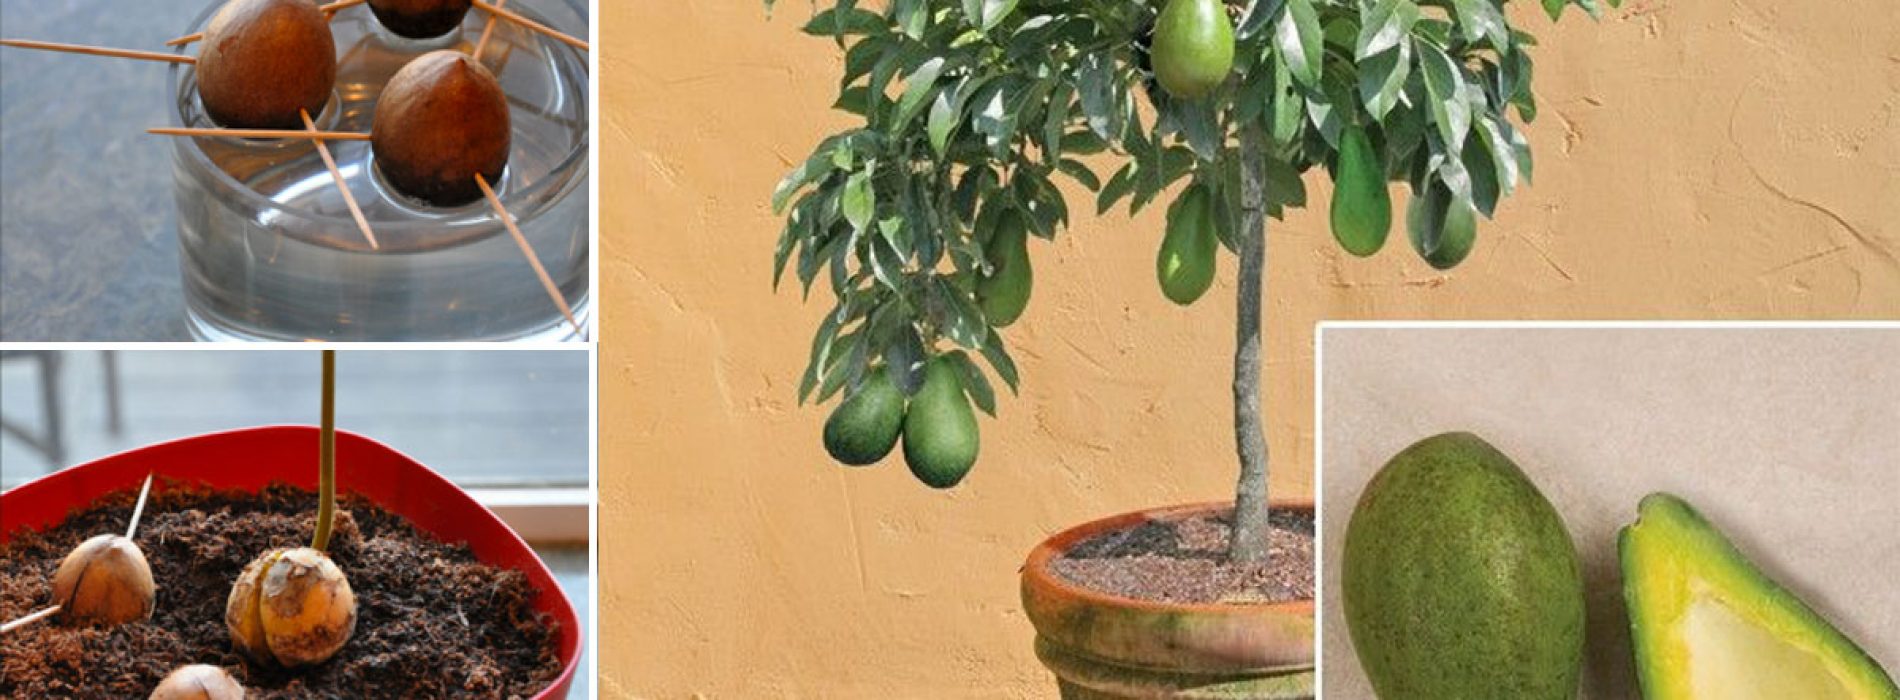 Vanaf nu hoef jij geen avocado’s meer te kopen. Ze zelf kweken is namelijk super makkelijk via deze manier!